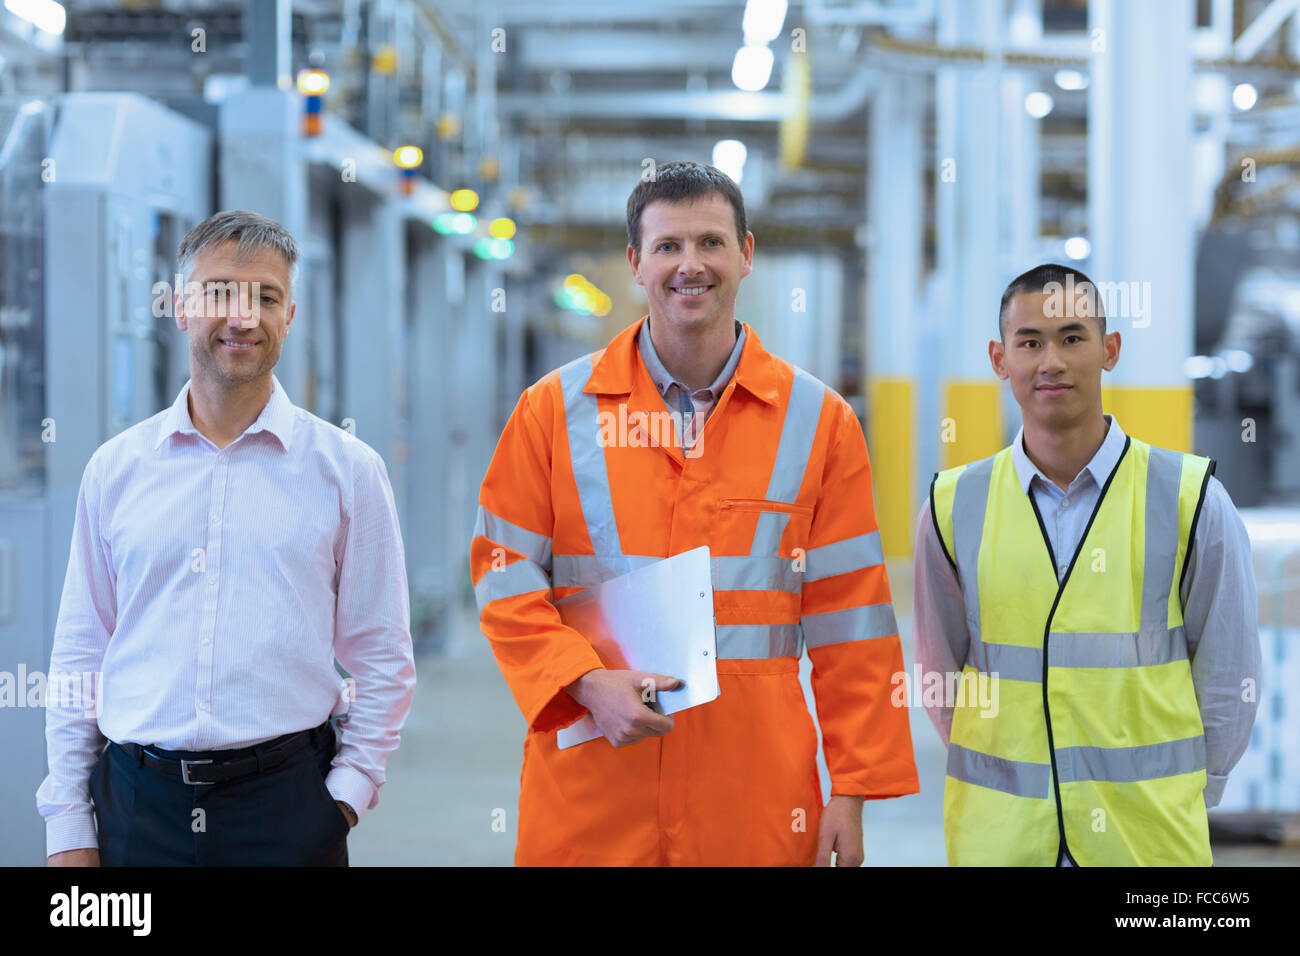 Ritratto di lavoratori sorridente in abiti riflettenti in fabbrica Foto Stock